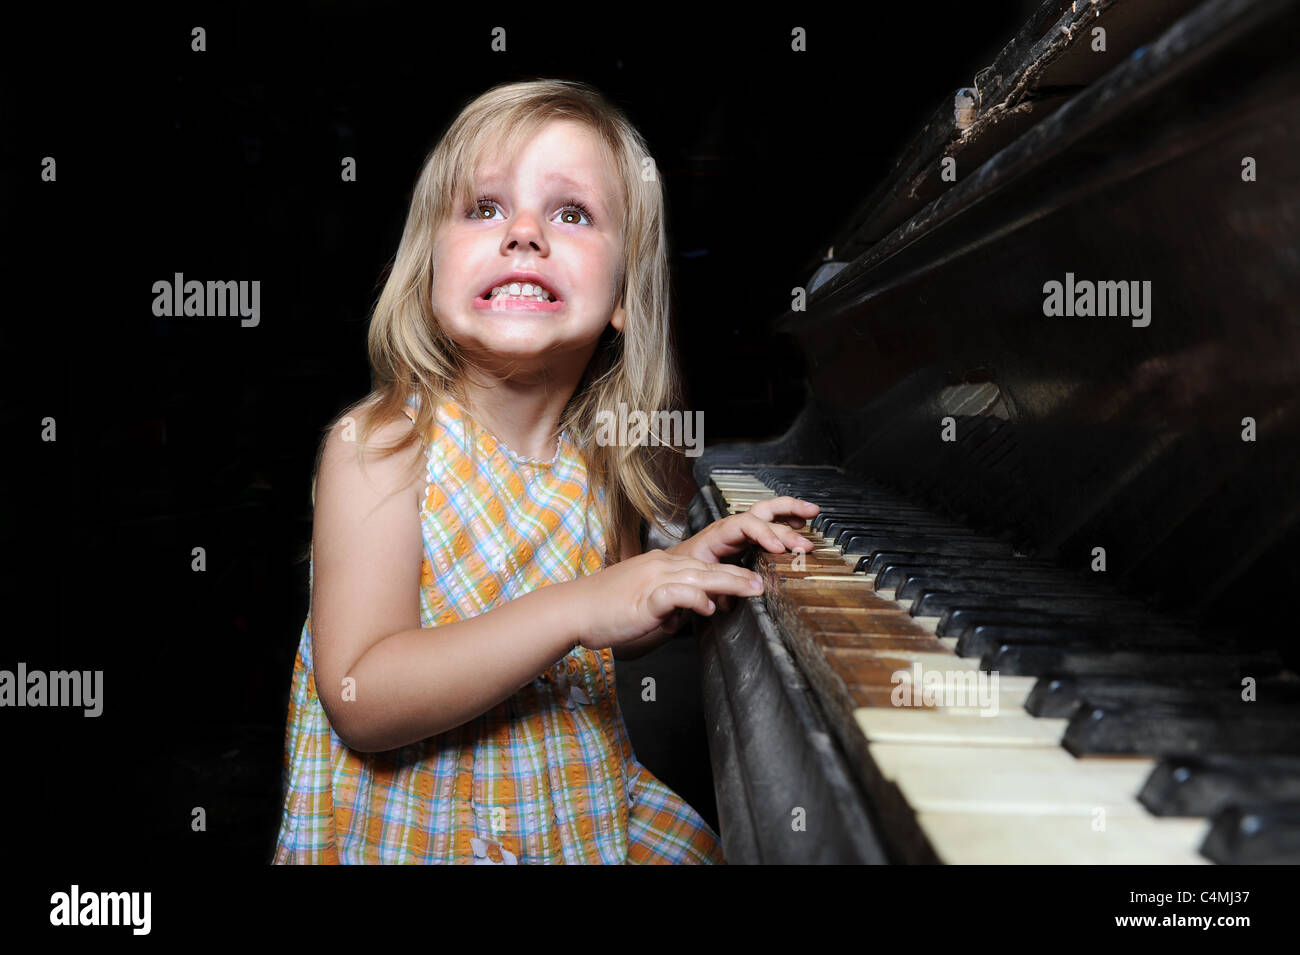 Fille jouant sur un piano. Banque D'Images